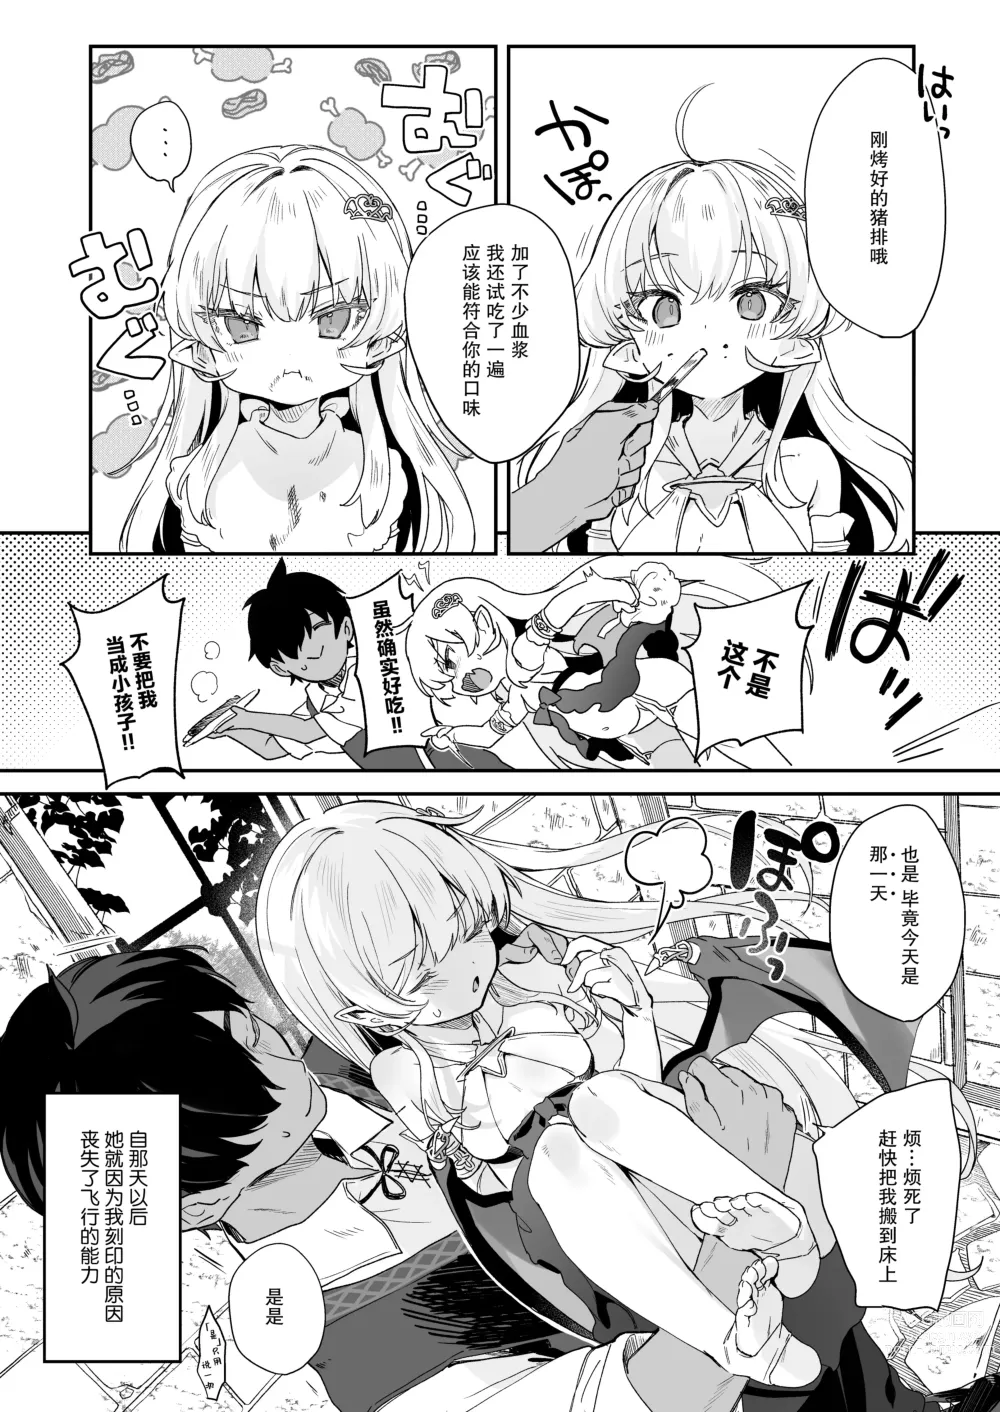 Page 30 of doujinshi 血姬夜交 -真祖公主在发情!- (decensored)